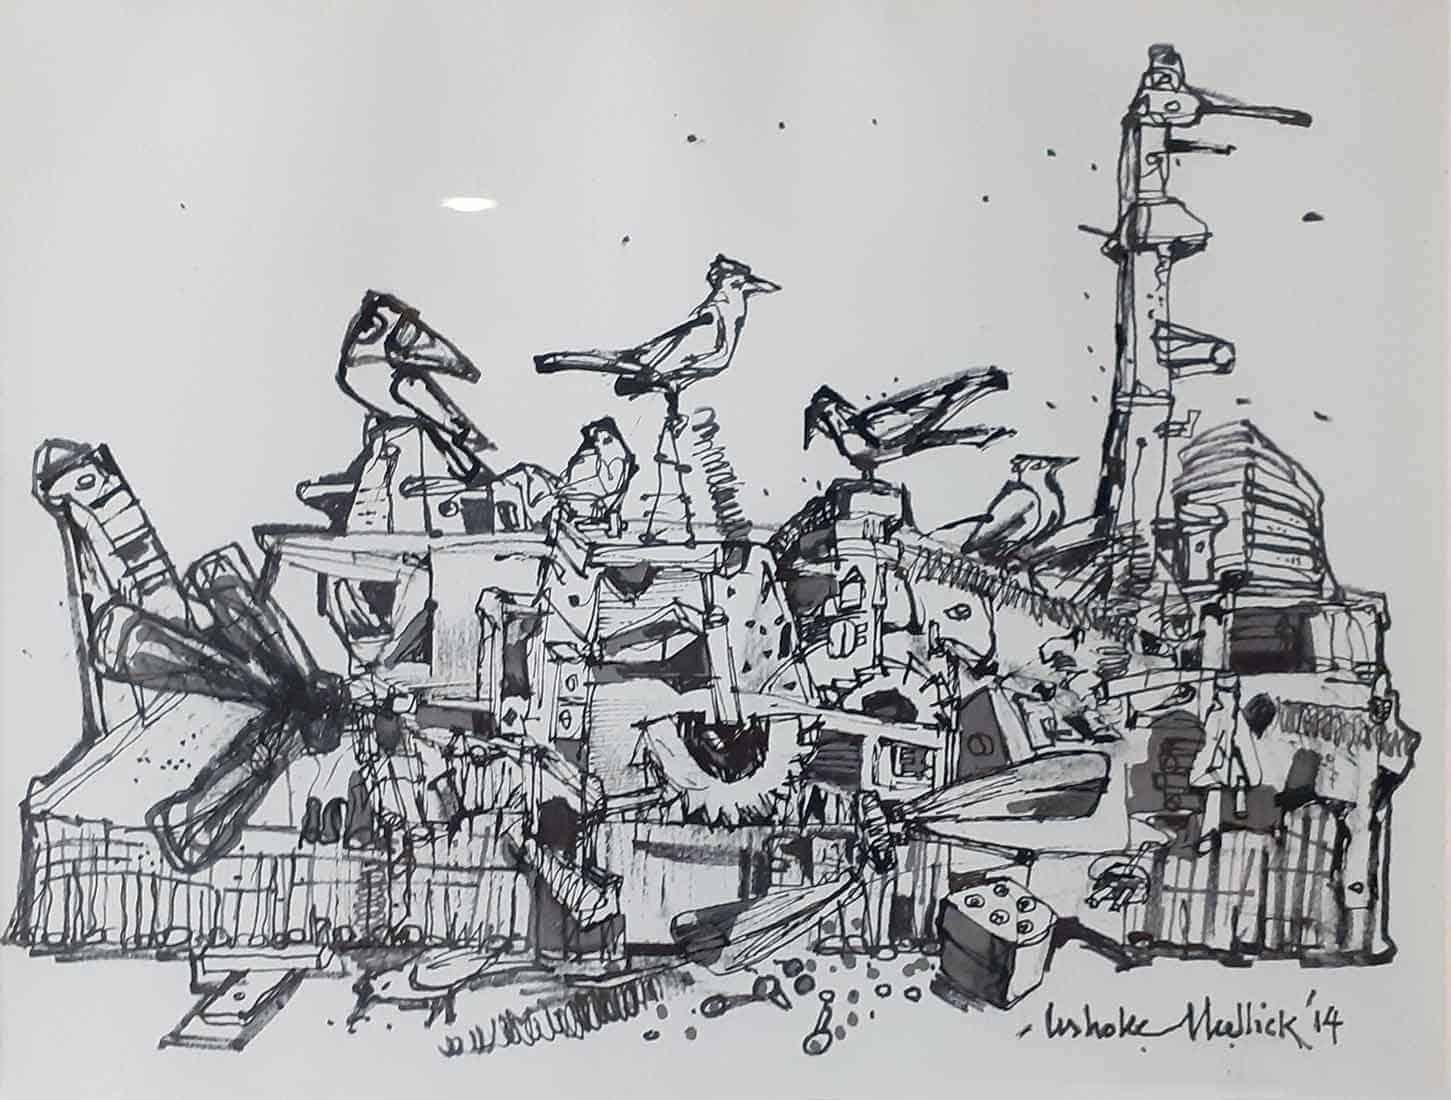 Vie citadine, dessin, encre sur papier, noir, blanc par Artistics indiens "En stock"